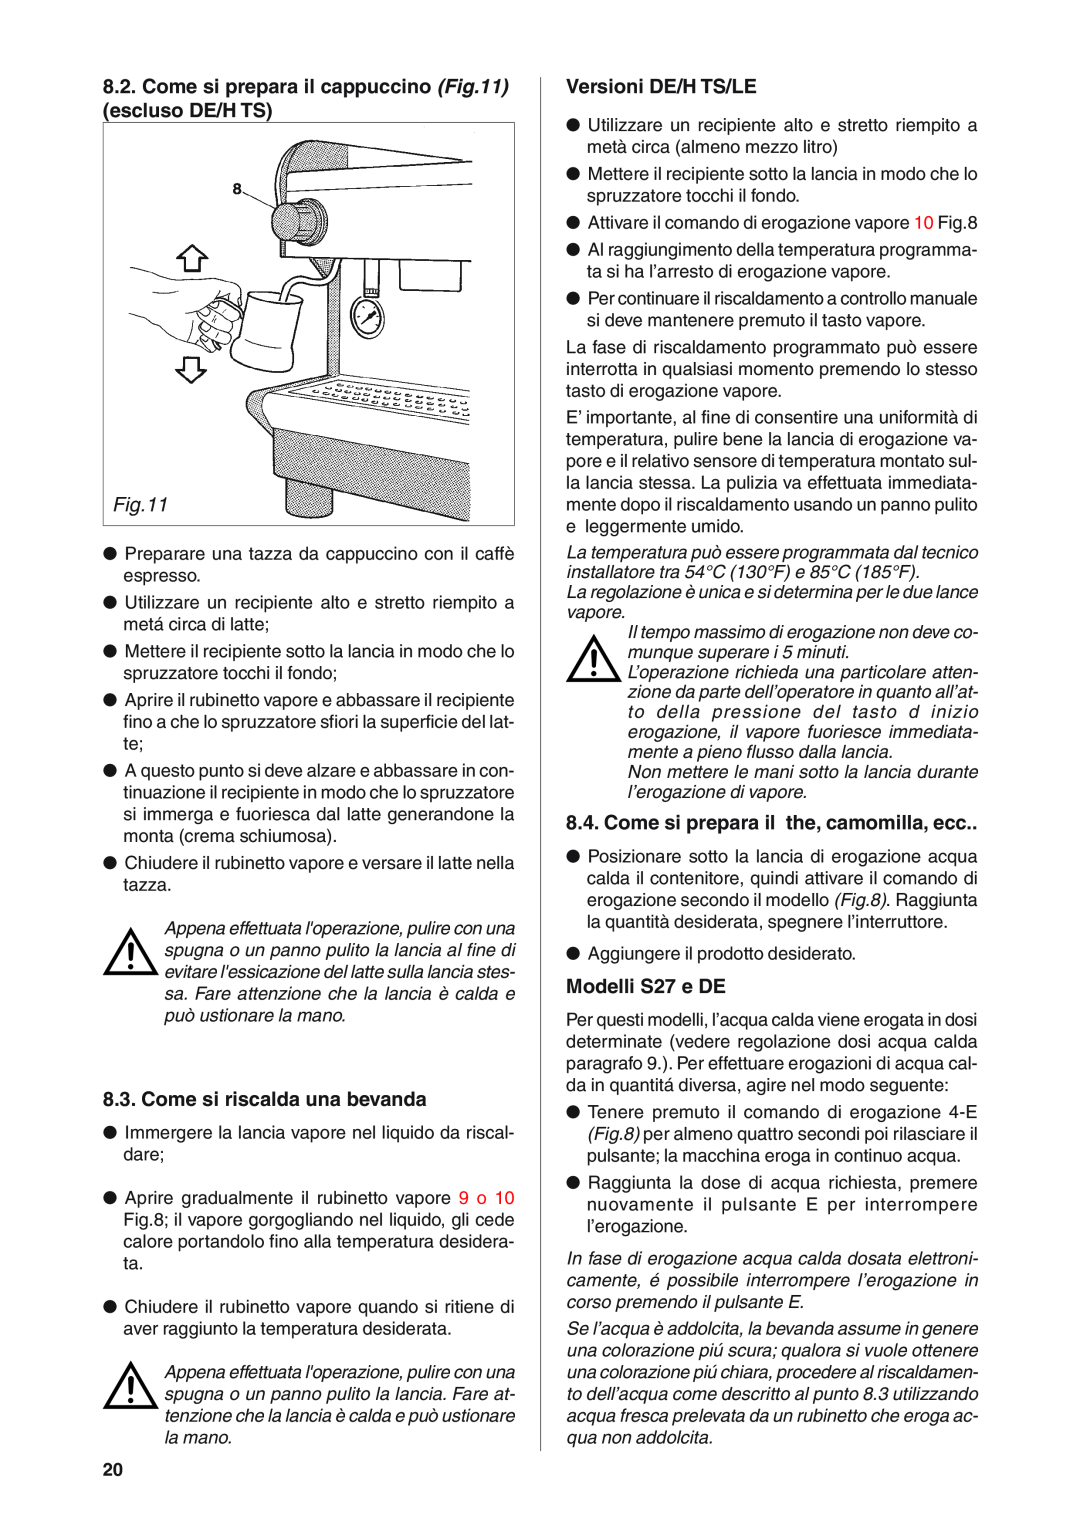 Rancilio S20 manual Come si prepara il cappuccino escluso DE/H TS, Come si riscalda una bevanda, Versioni DE/H TS/LE 